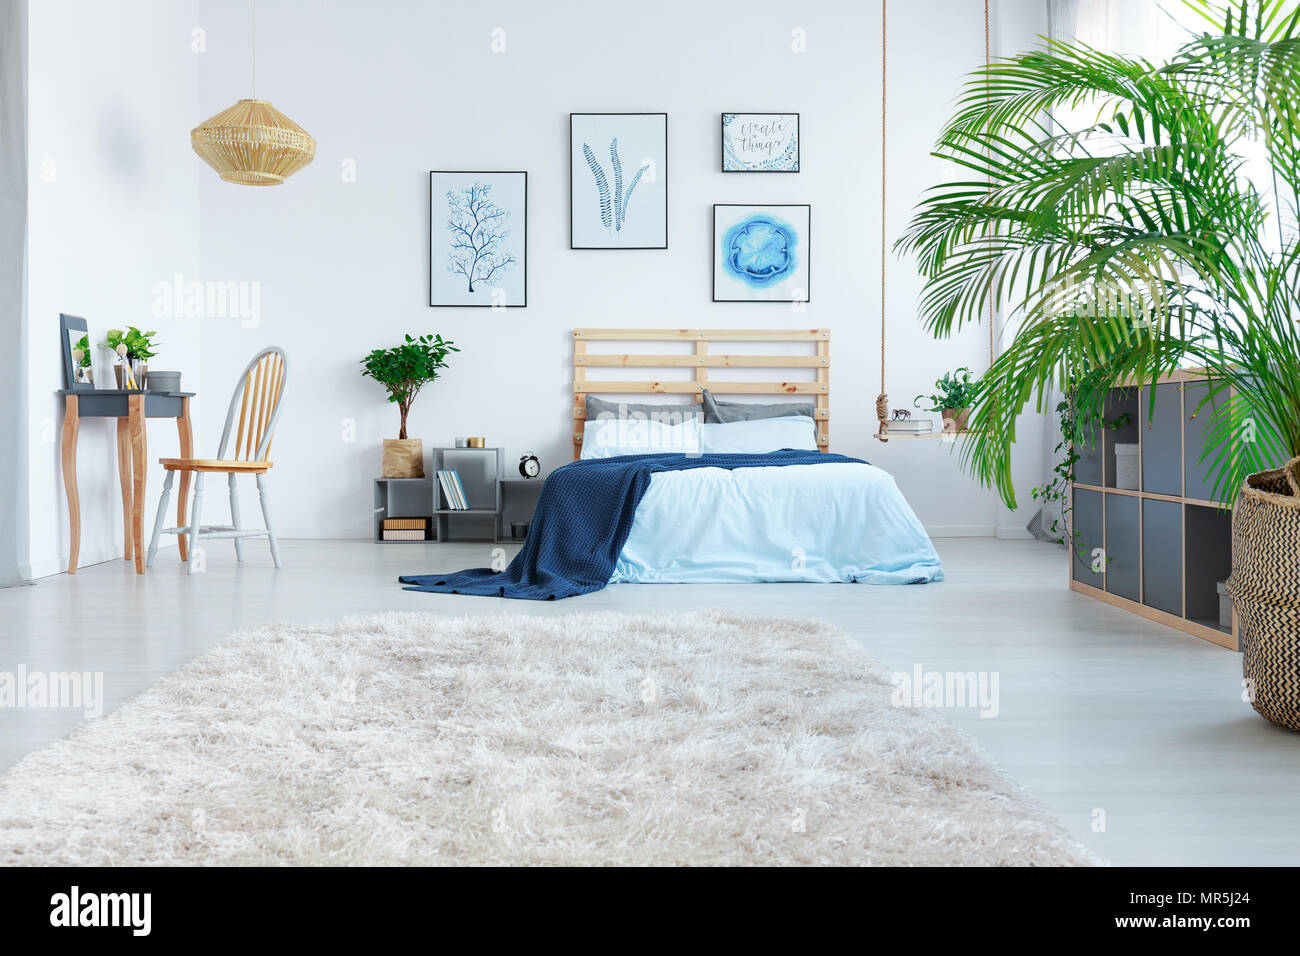 Chambre élégante avec lit, coiffeuse en bois et des plantes Photo Stock -  Alamy